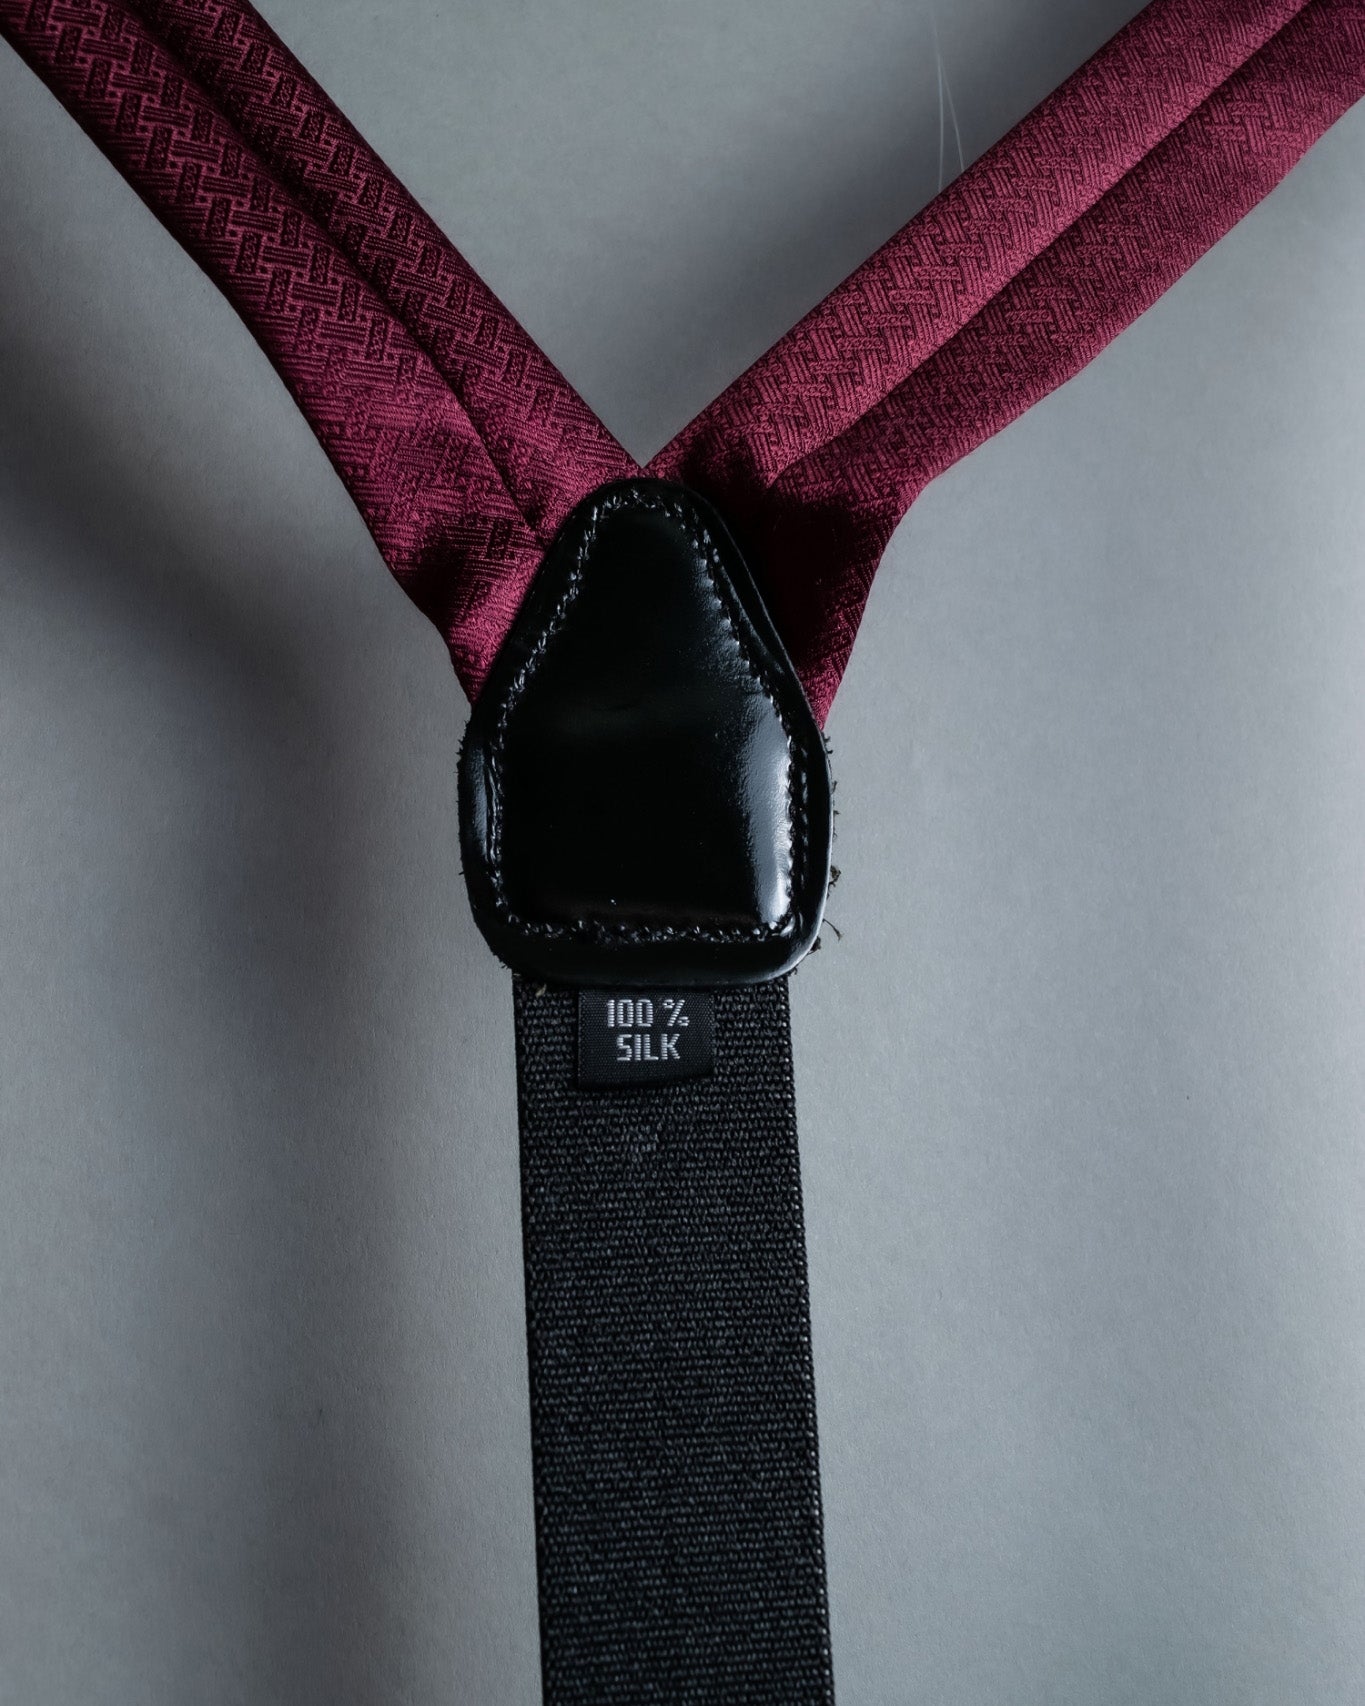 Silk Suspenders Chewy Slacks